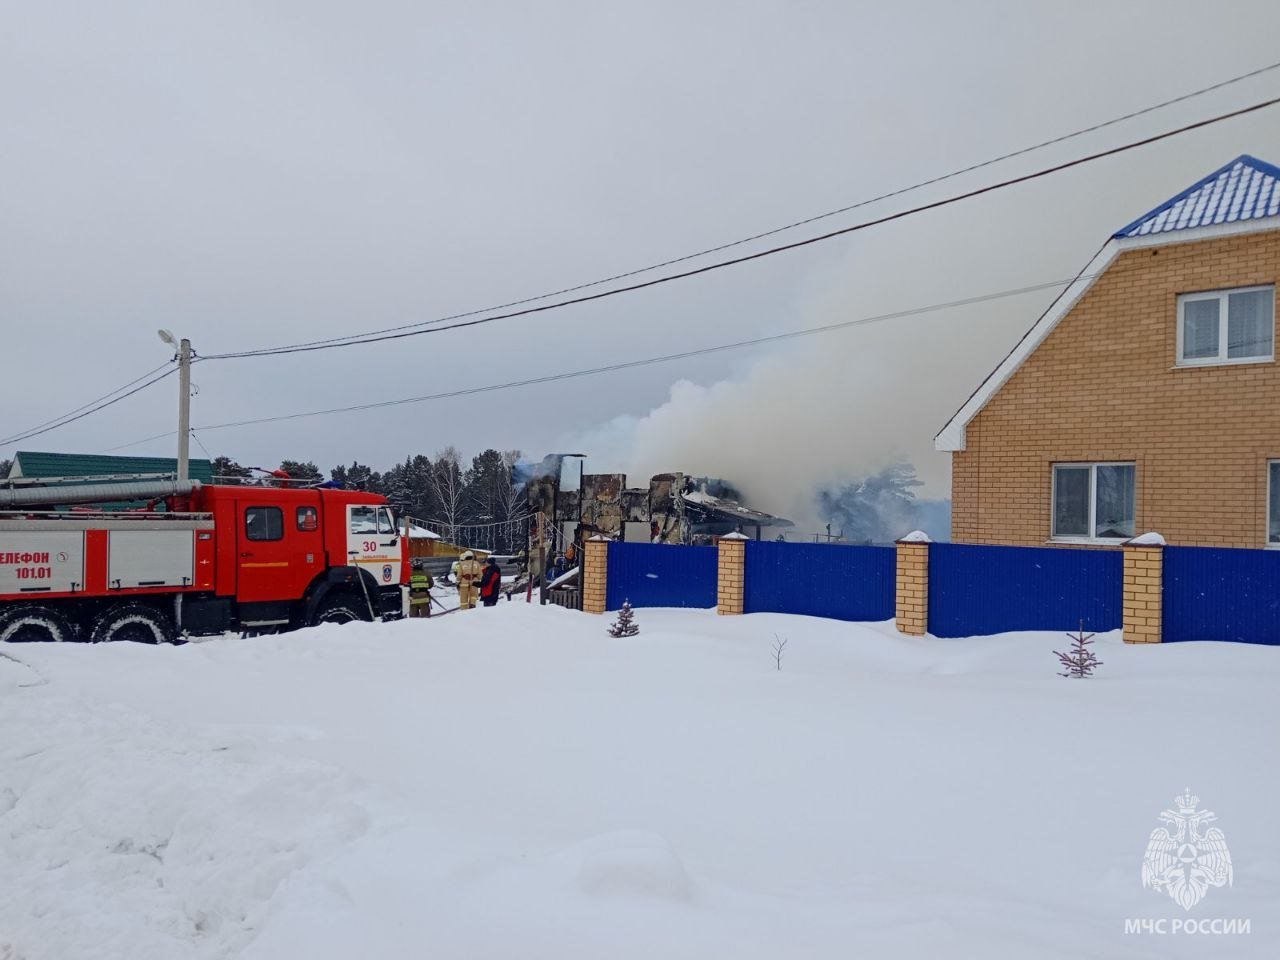 В управлении МЧС по Удмуртии объяснили причины съезда в кювет пожарных машин в Завьяловском районе